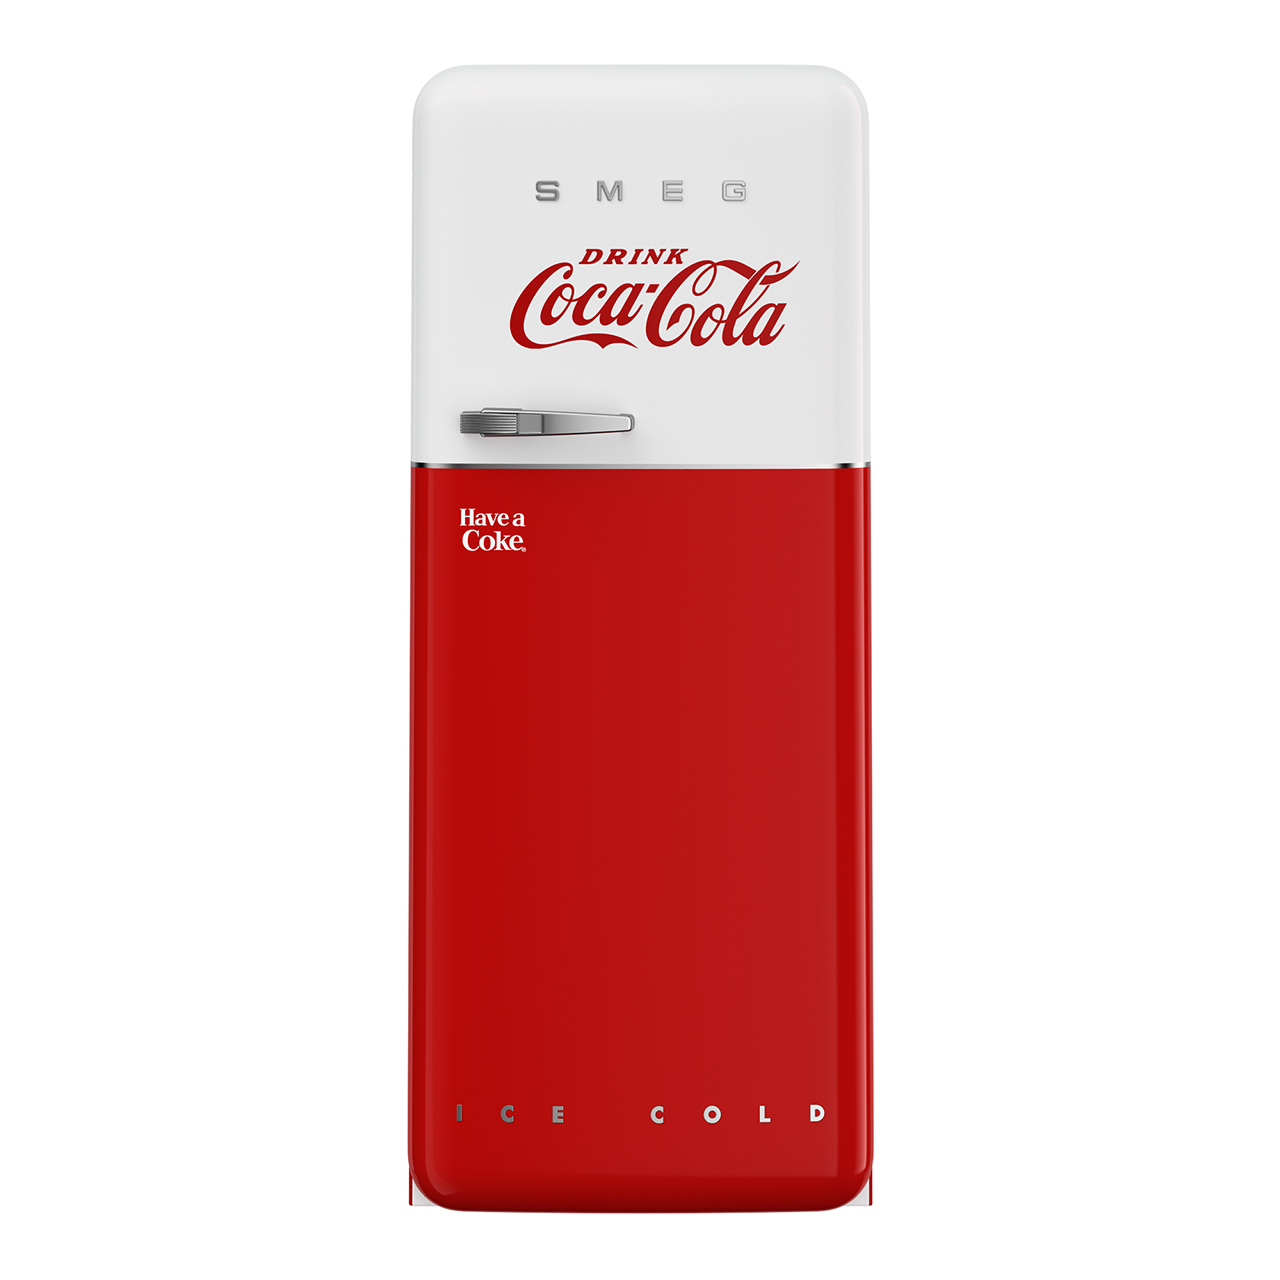 FAB28 Coca-Cola Refrigerator by Smeg